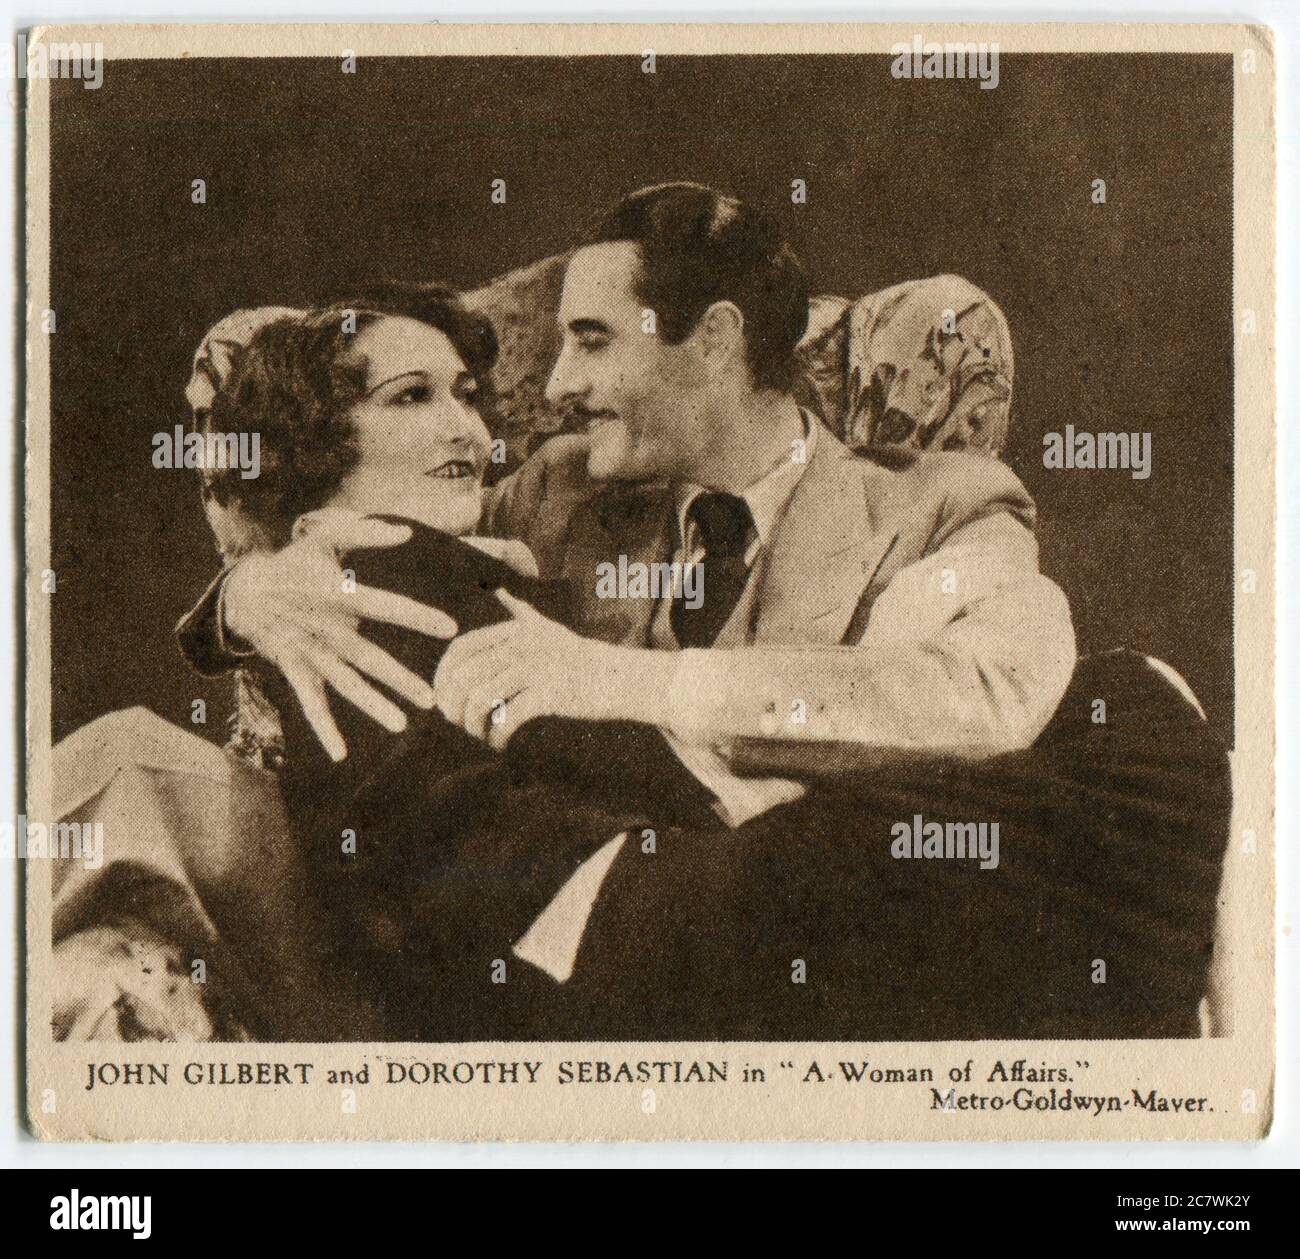 Carte à cigarettes Kensitas « Love Scenes from Famous films » - John Gilbert et Dorothy Sebastian dans « A Woman of Affairs ». Deuxième série publiée en 1932 par J. Wix & Sons Ltd Banque D'Images